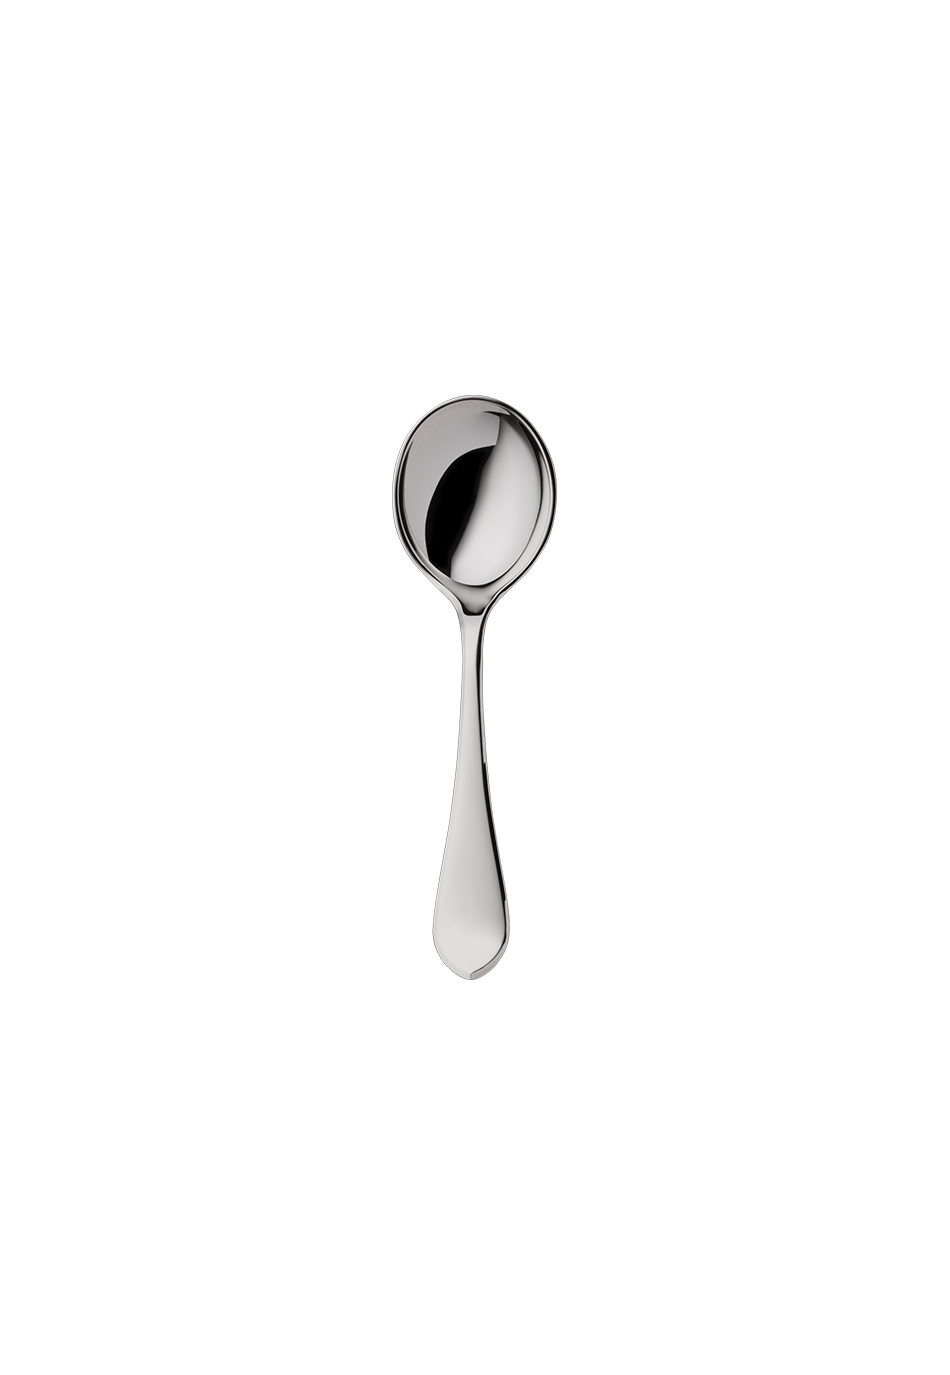 Eclipse Sugar Spoon (150g massive silverplated)